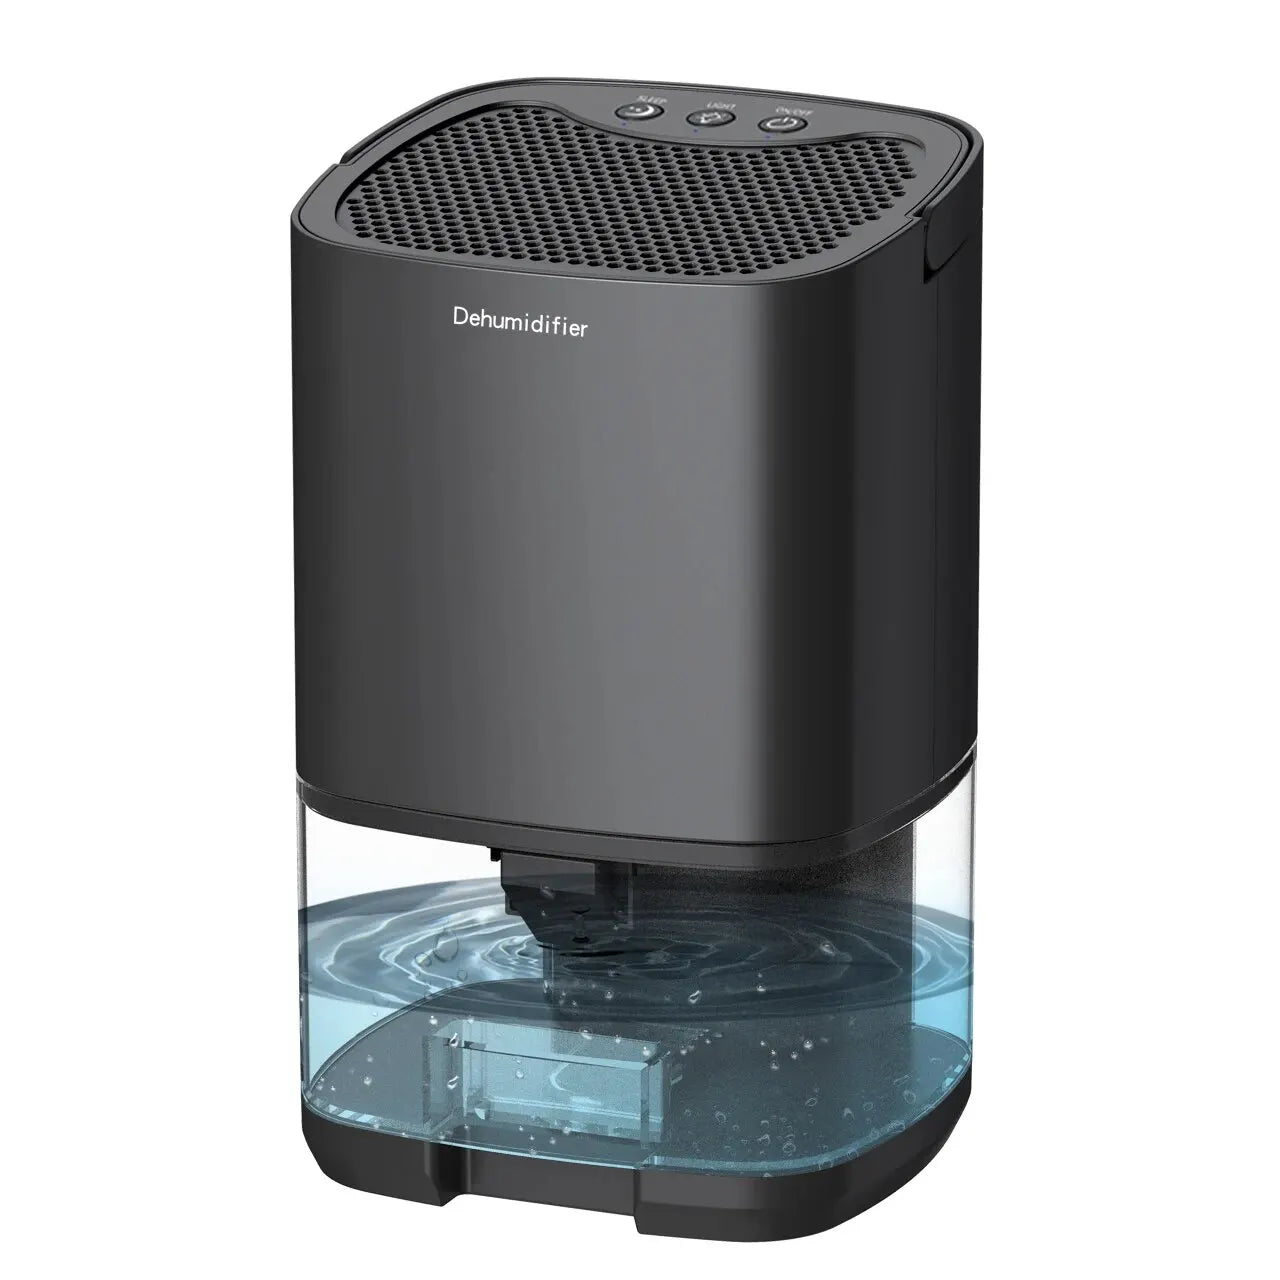 Portable Dehumidifier for Air Filter